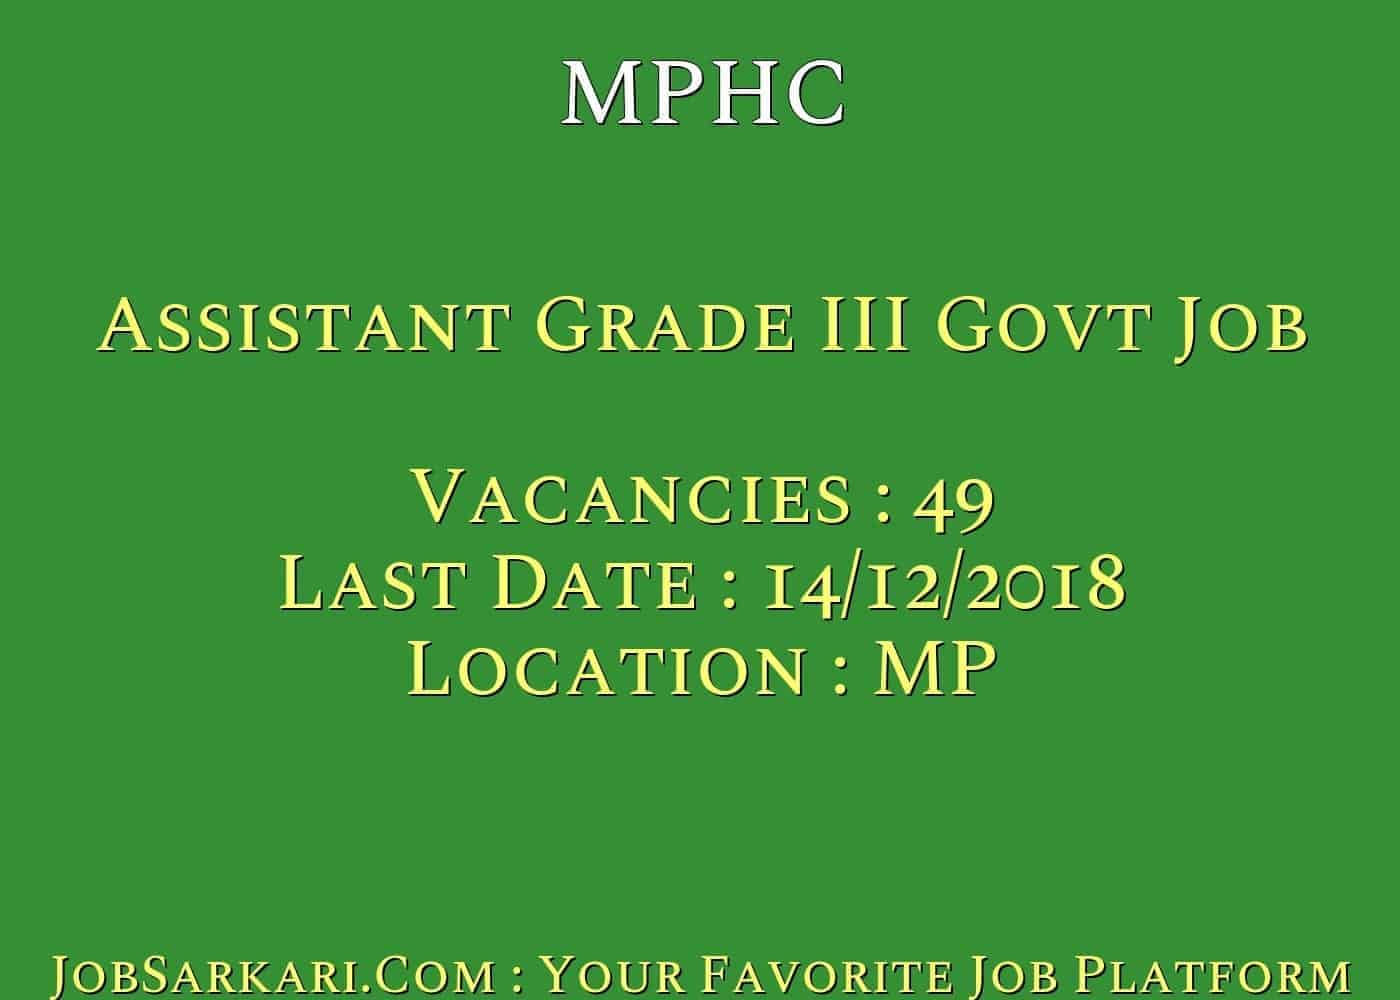 MPHC Recruitment 2018 for Assistant Grade III Govt Job